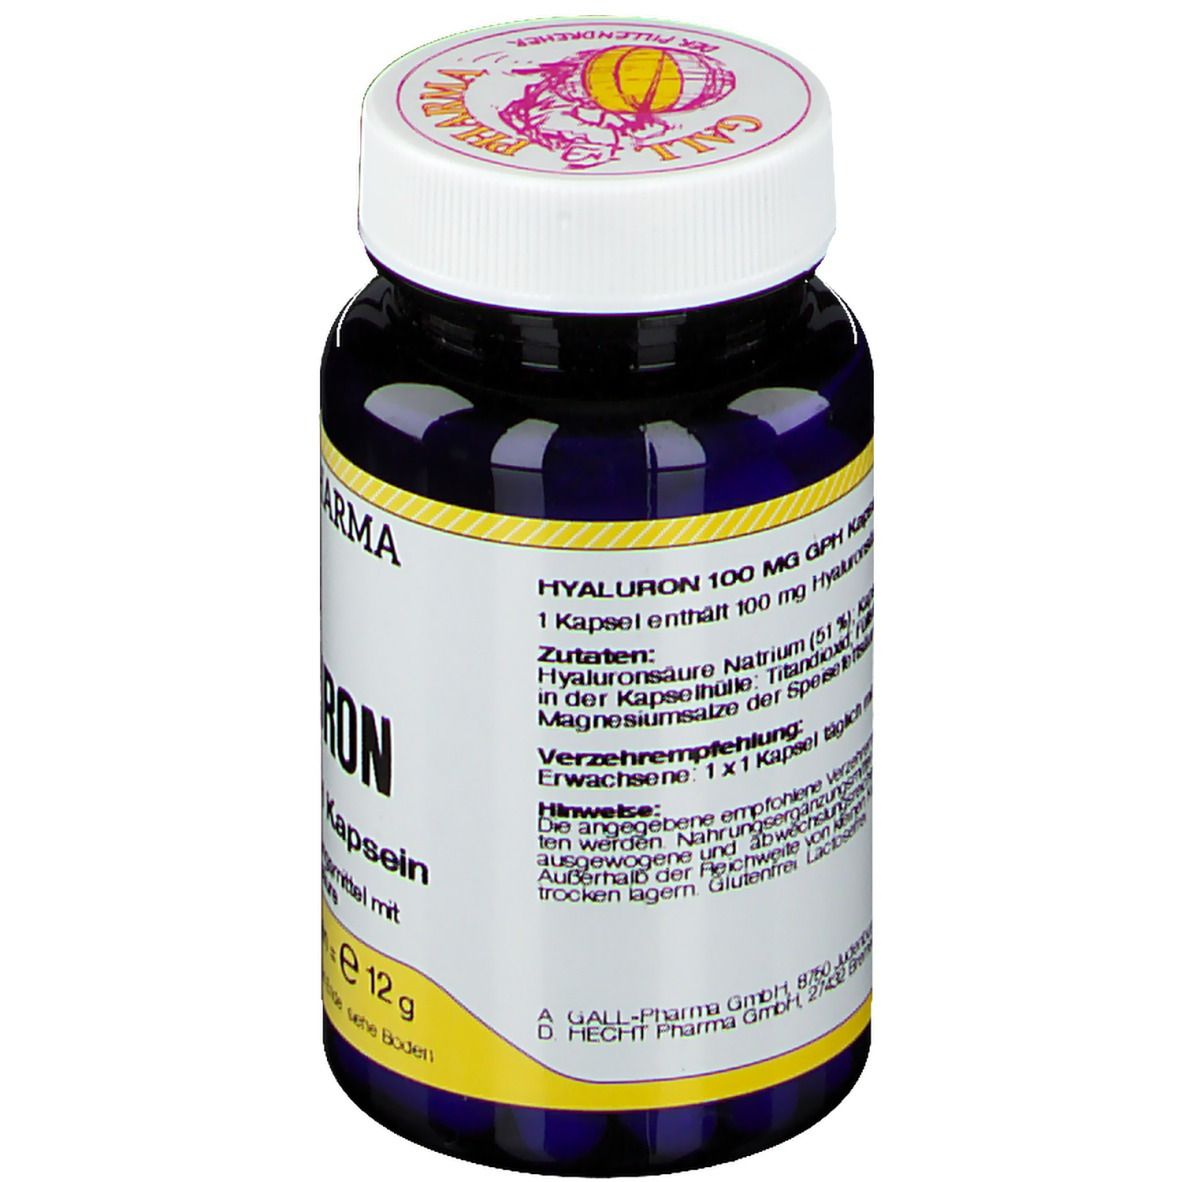 GALL PHARMA Hyaluron 100 mg